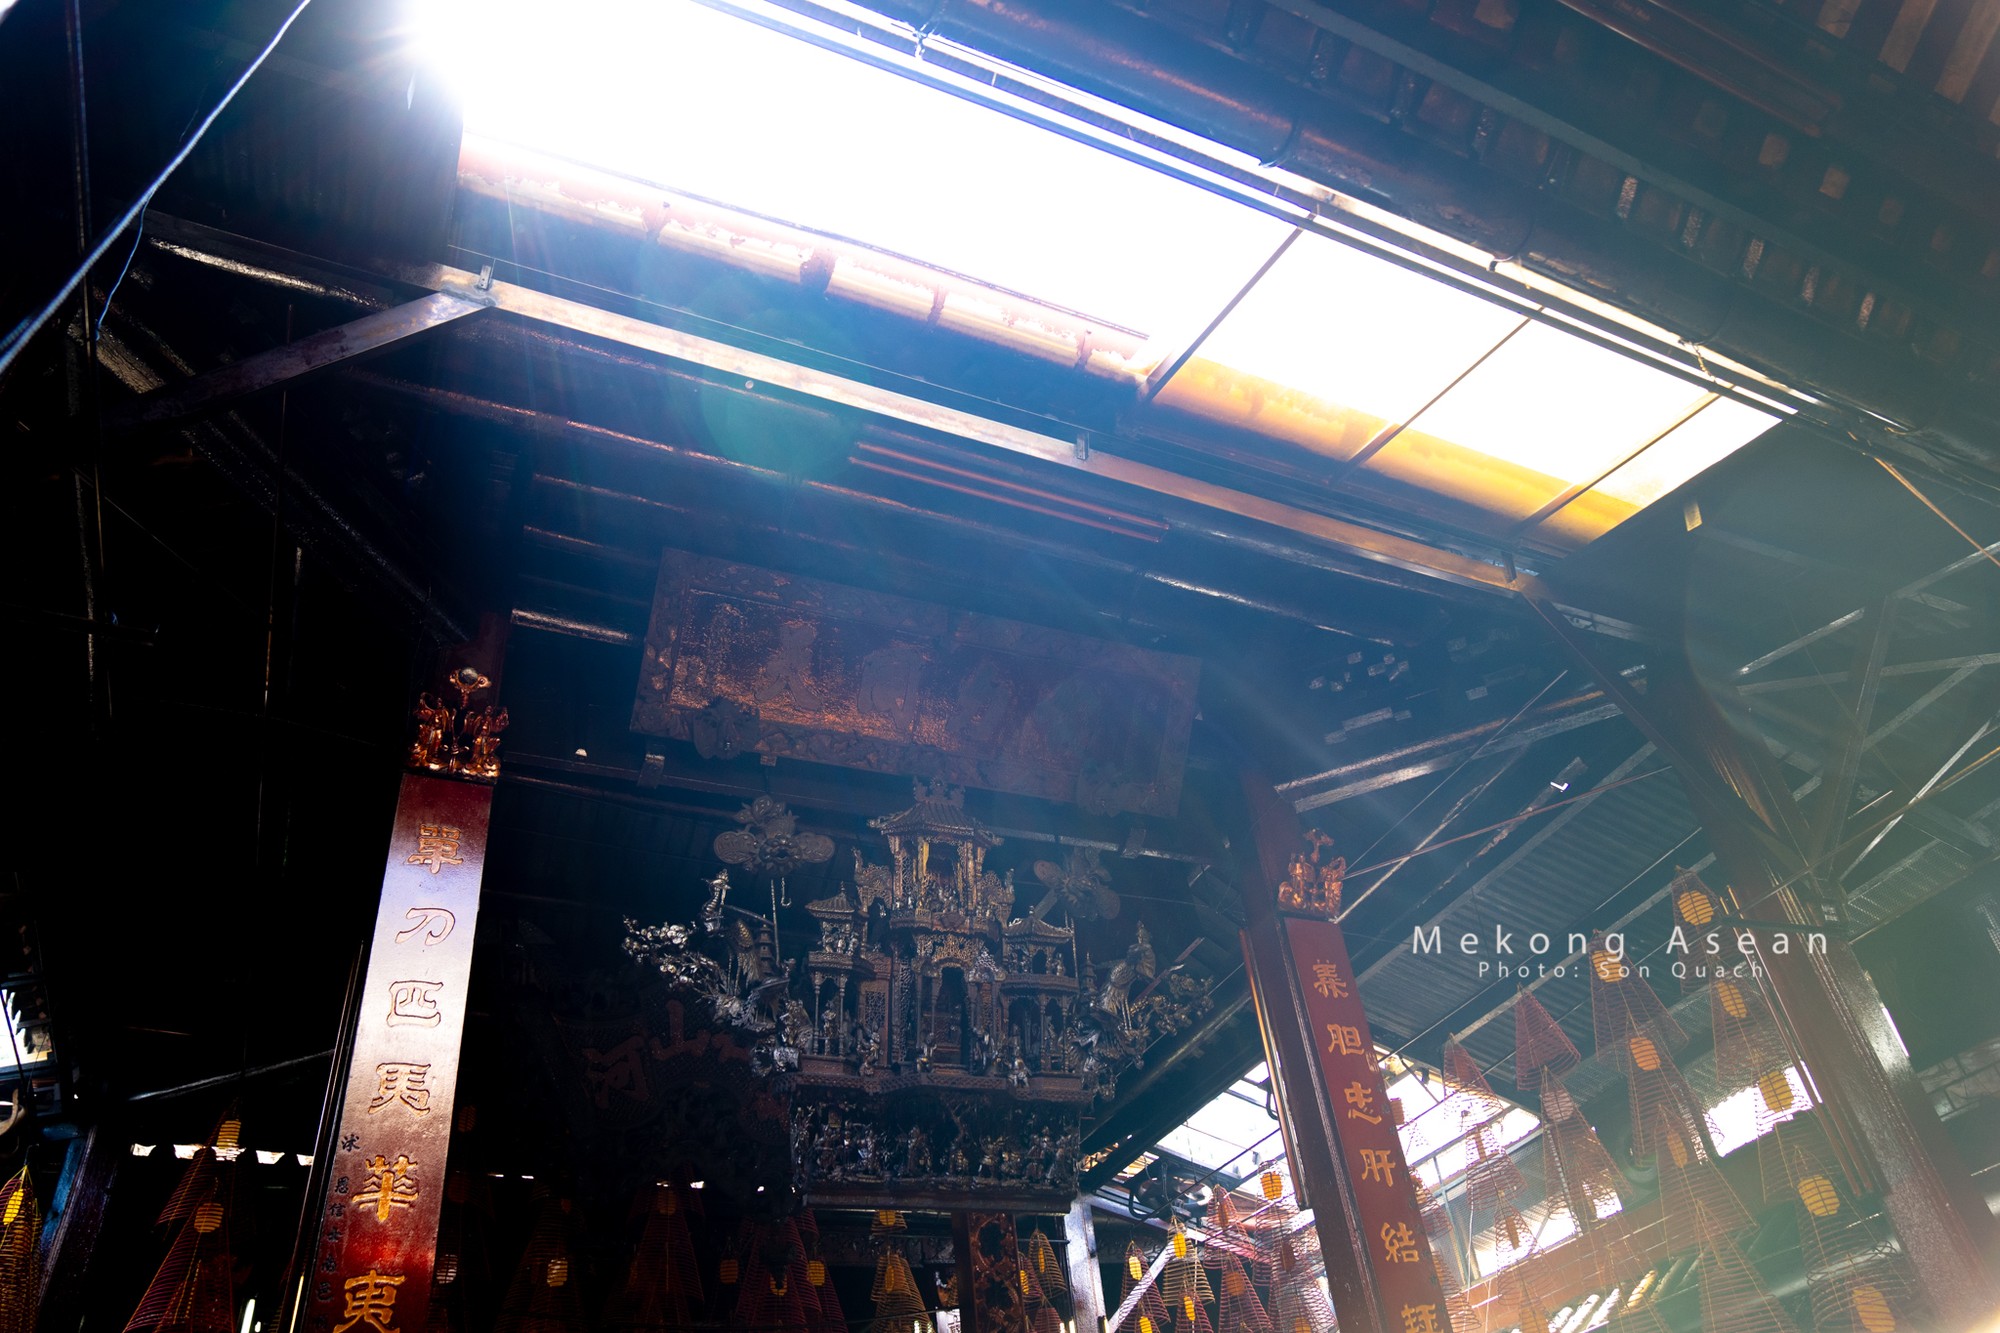 Đặc biệt, chùa ông còn có lễ đấu đèn được tổ chức 10 năm 1 lần với quan niệm ai sở hữu được chiếc đèn lồng sẽ gặp may mắn và thành đạt.